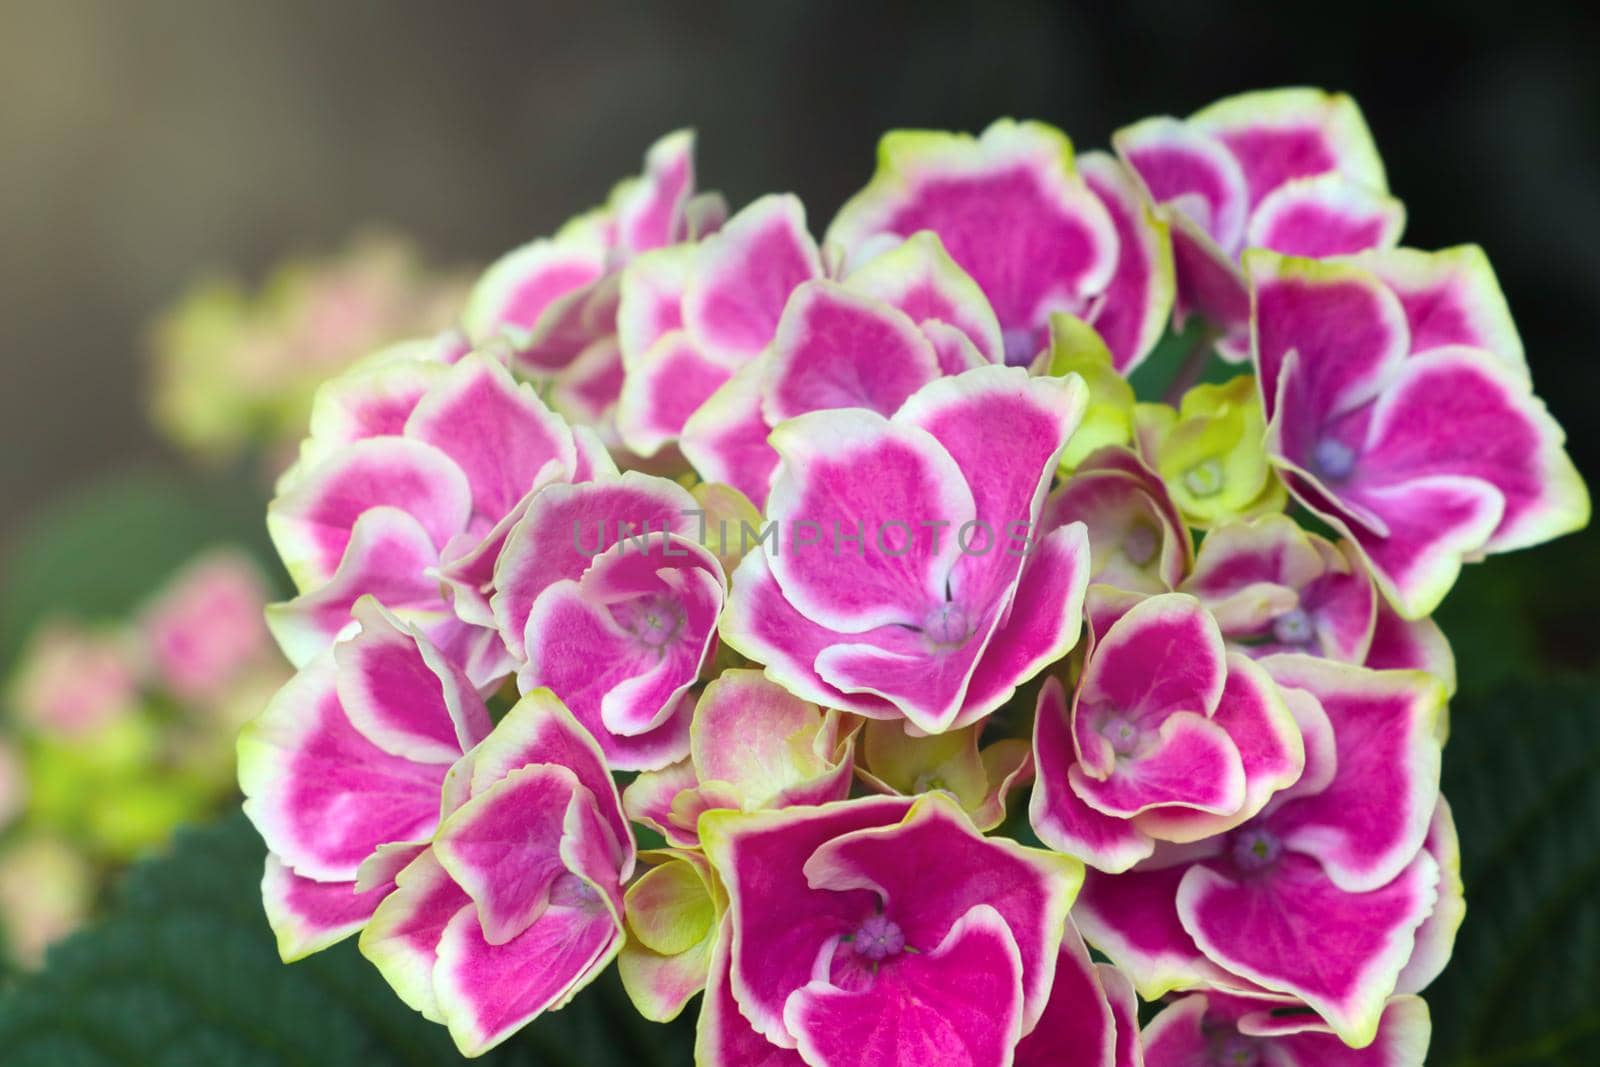 Flowering hydrangea in a park or garden. It is used in perfumery